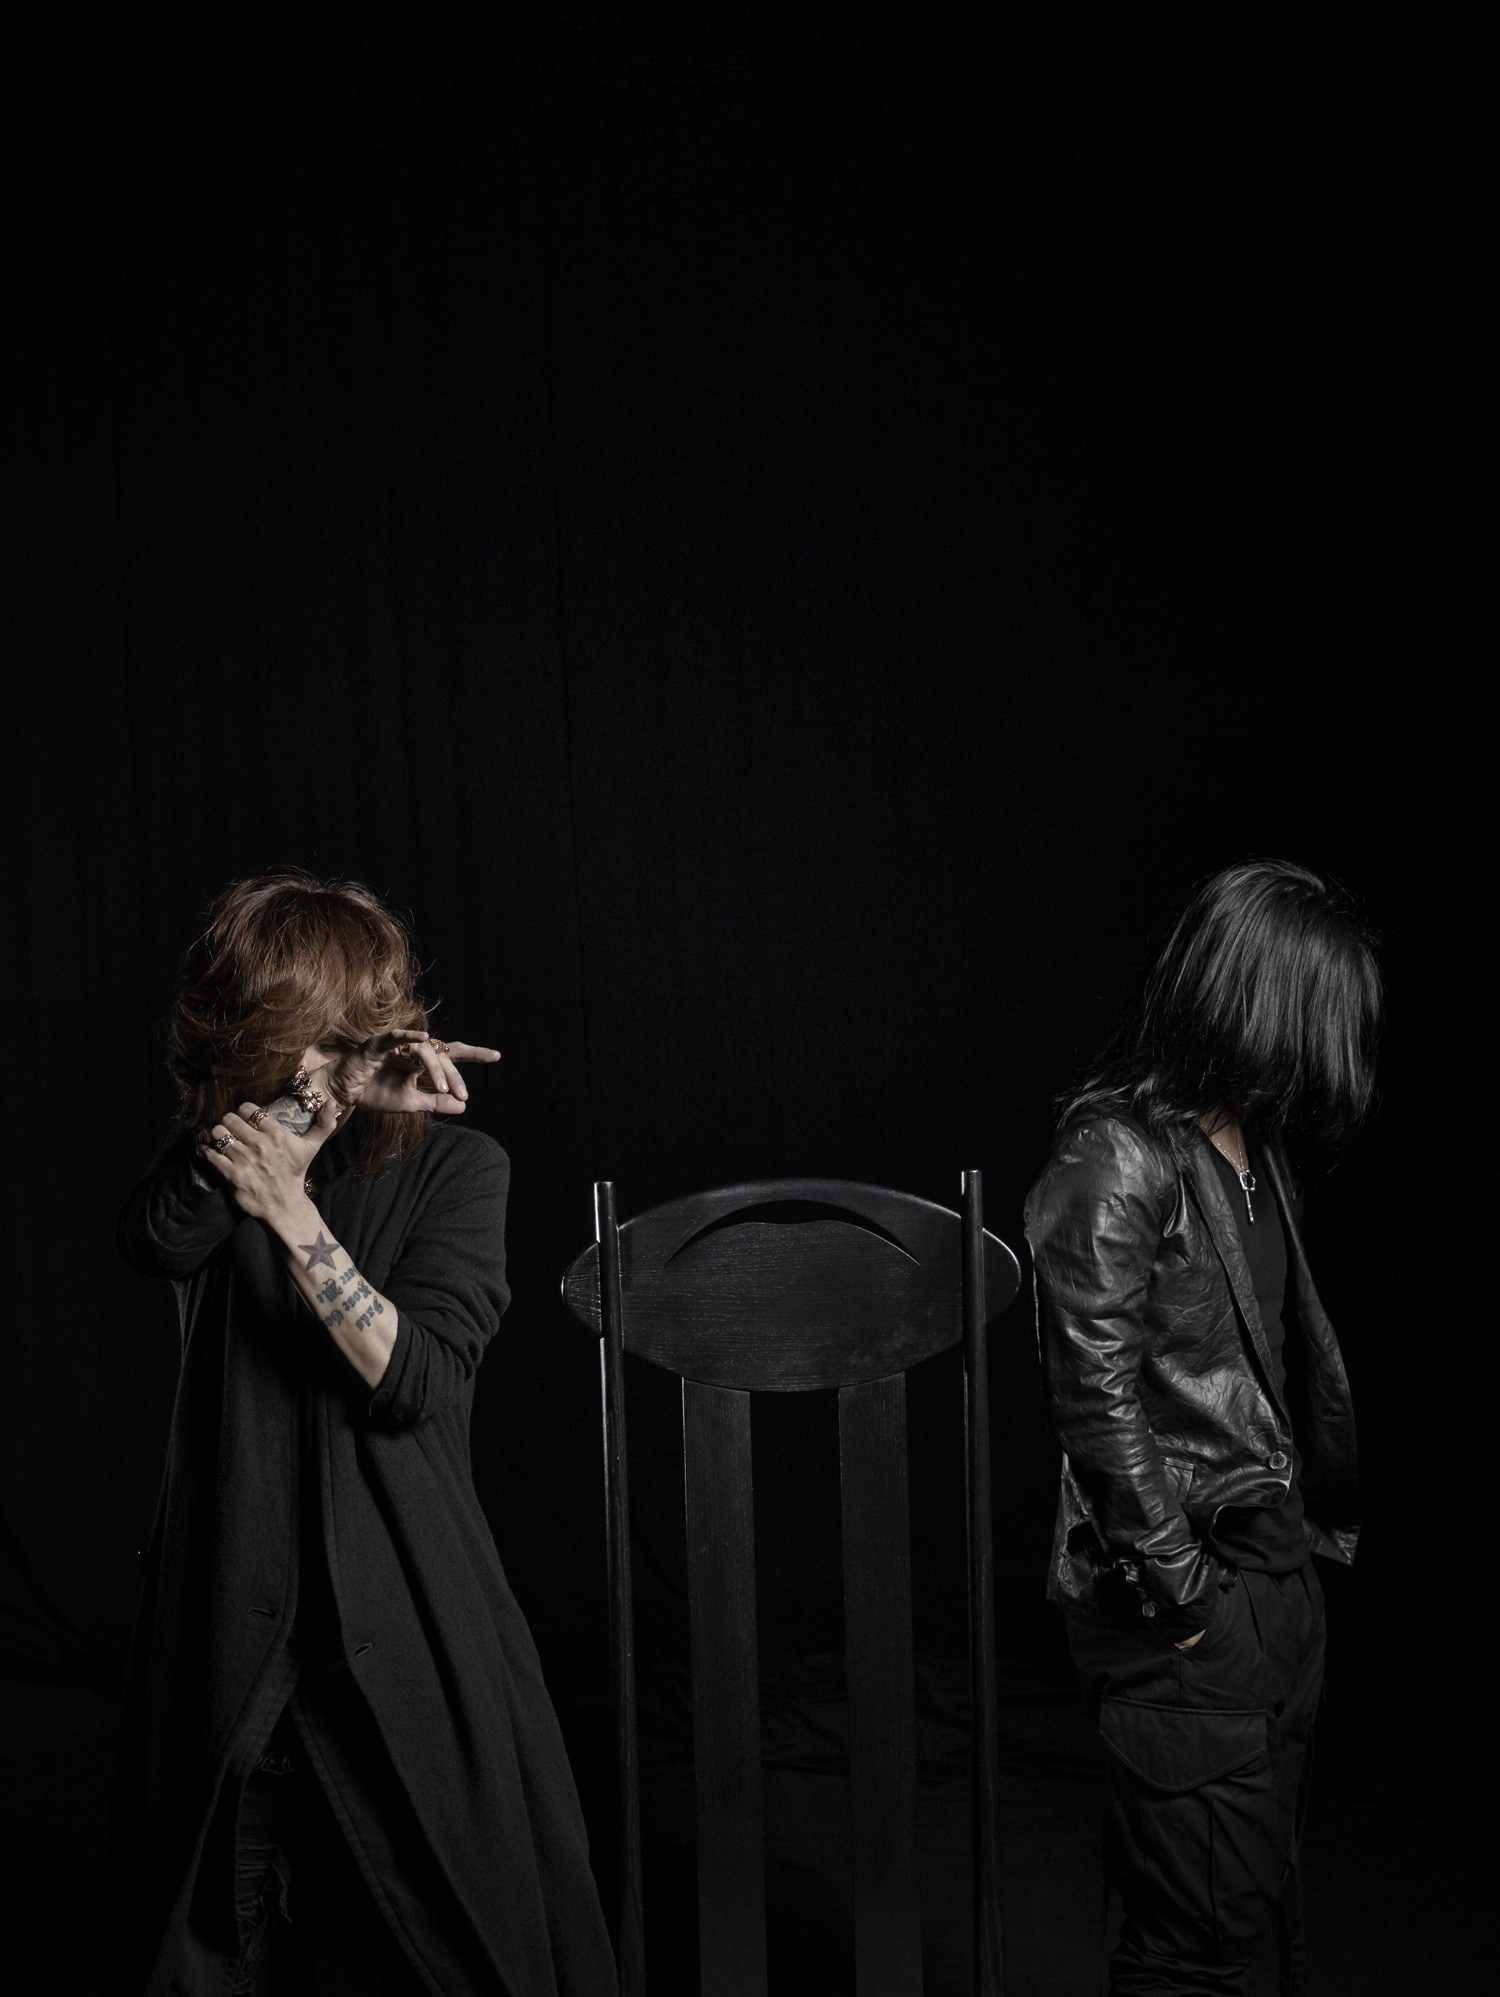 黒夢ライブにcoldrainのドラマーkatsuma参加決定 Rockの総合情報サイトvif